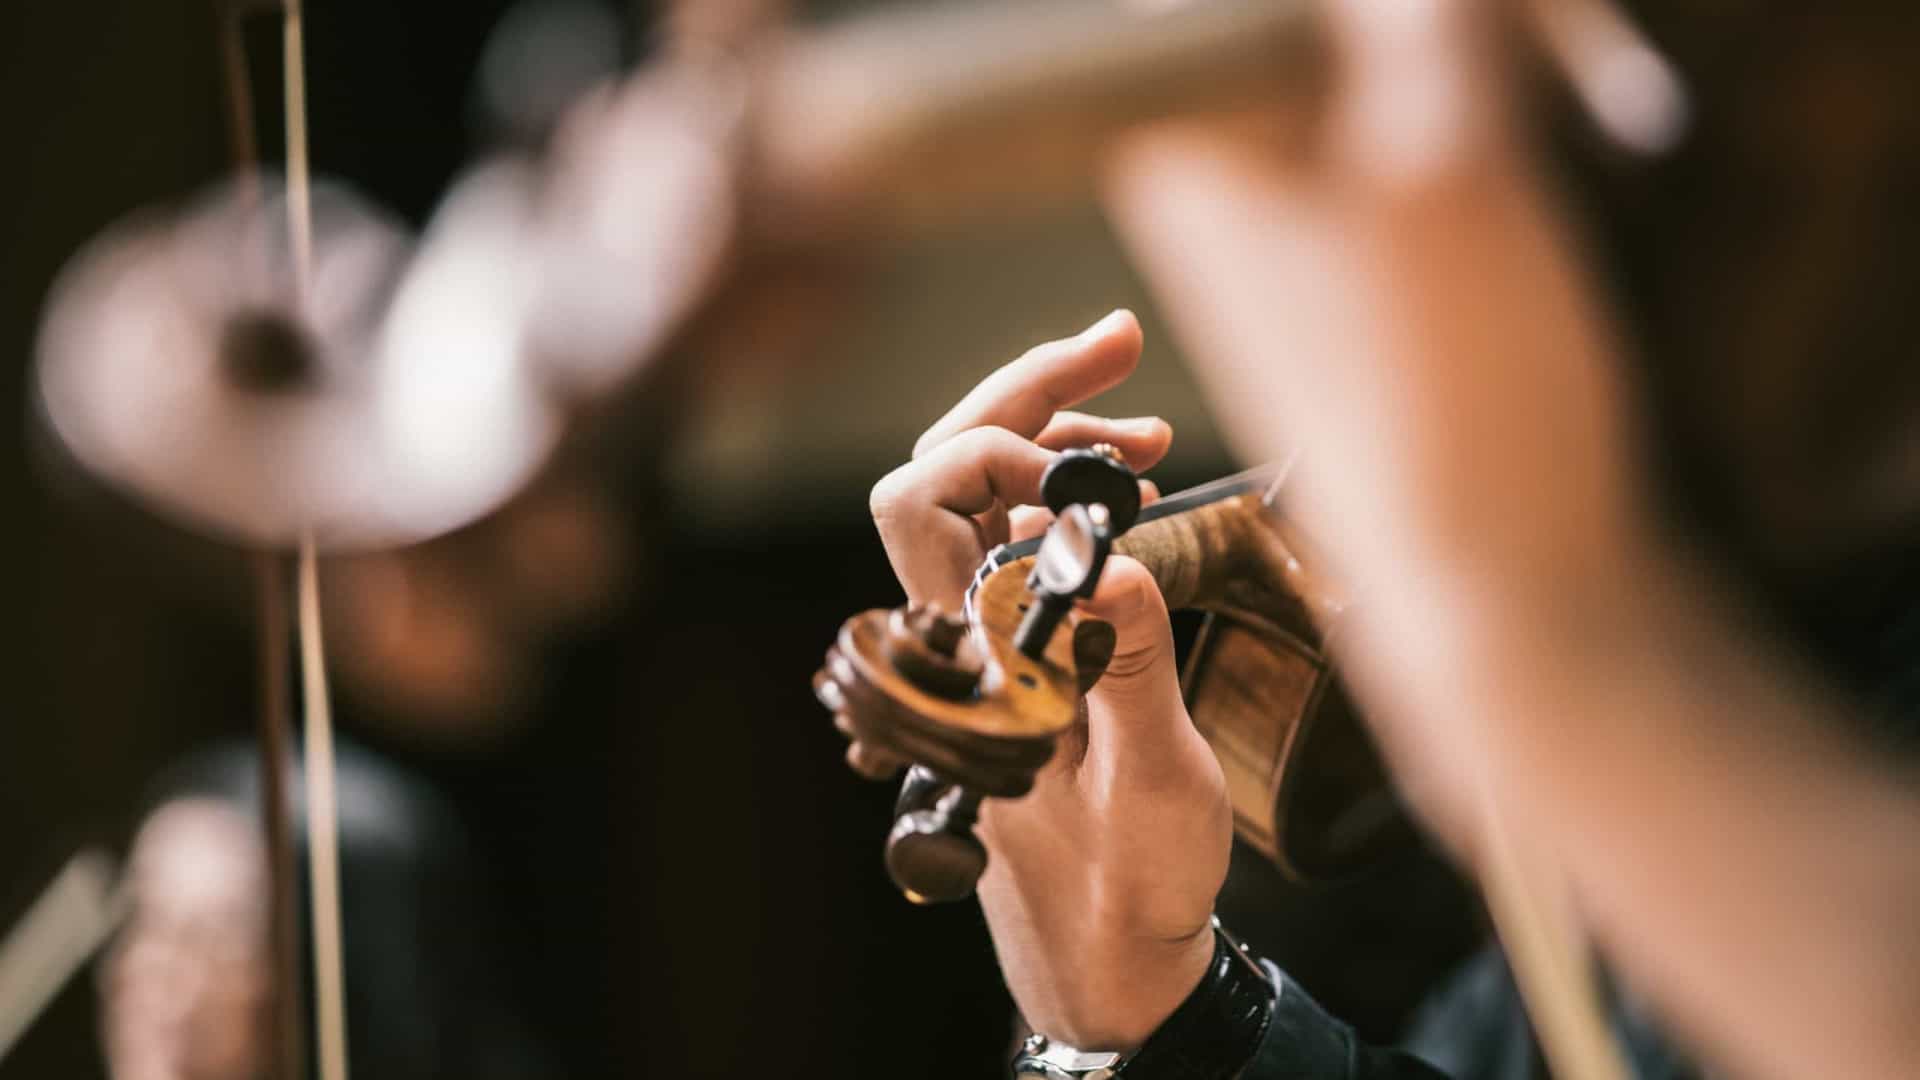 OPORTUNIDADE: Com bolsas de até R$ 2.200, orquestras brasileiras tentam atrair novos talentos